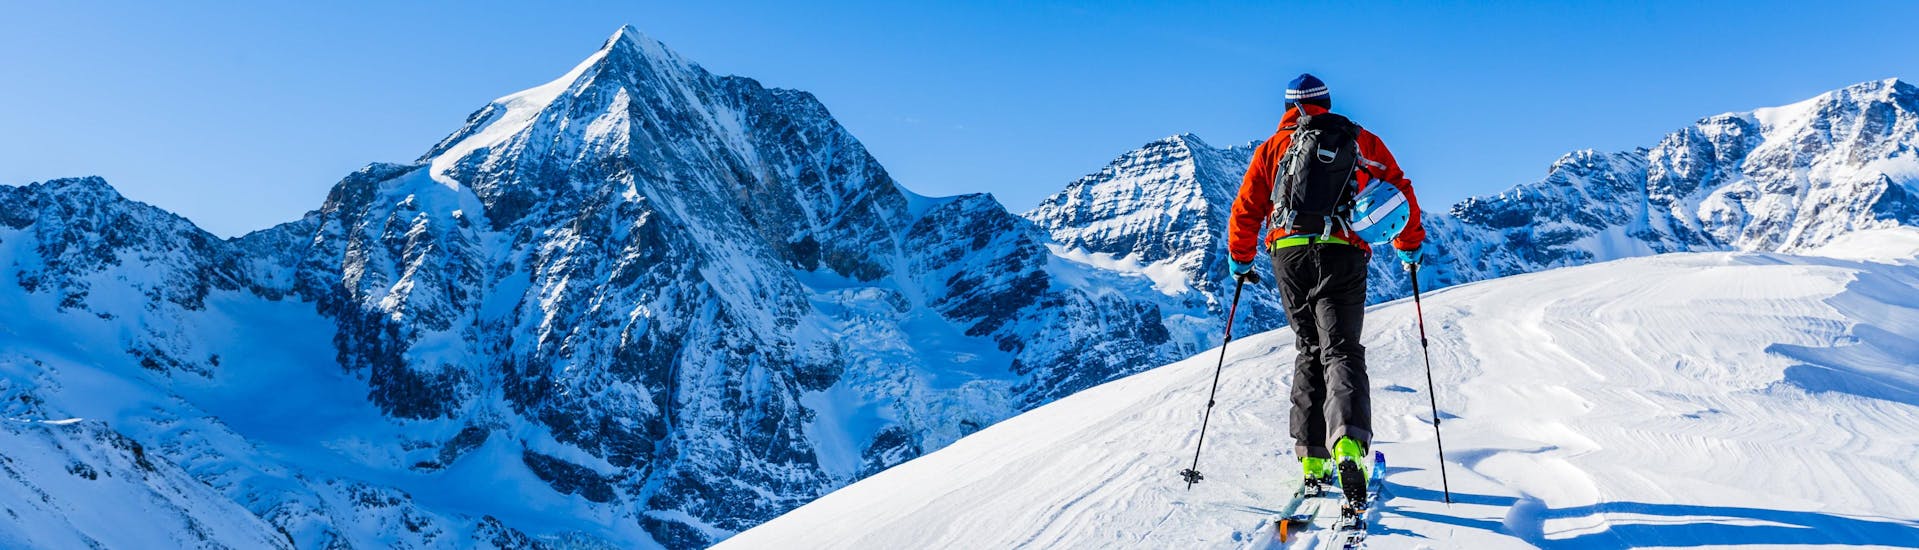 Ein Mann erkundet bei seiner Skitour in Frankreich die verschneite Berglandschaft.